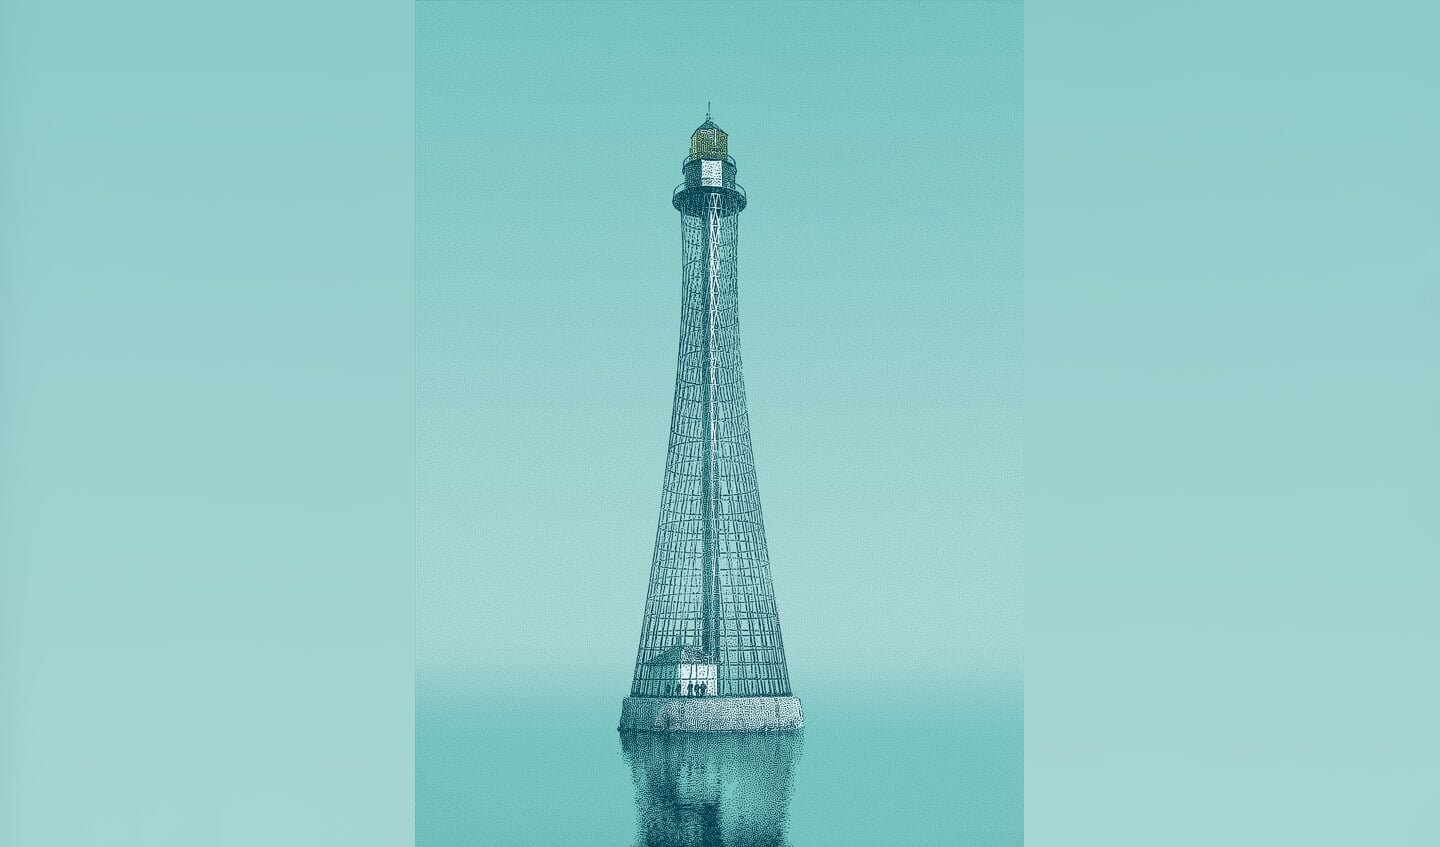 Ruim honderd jaar is de toren van Adziogol in Oekraïne, waar de Dnjepr in de Zwarte Zee uitmondt. Een staaltje fraaie Sovjet-architectuur, als een gevlochten mand van staal.